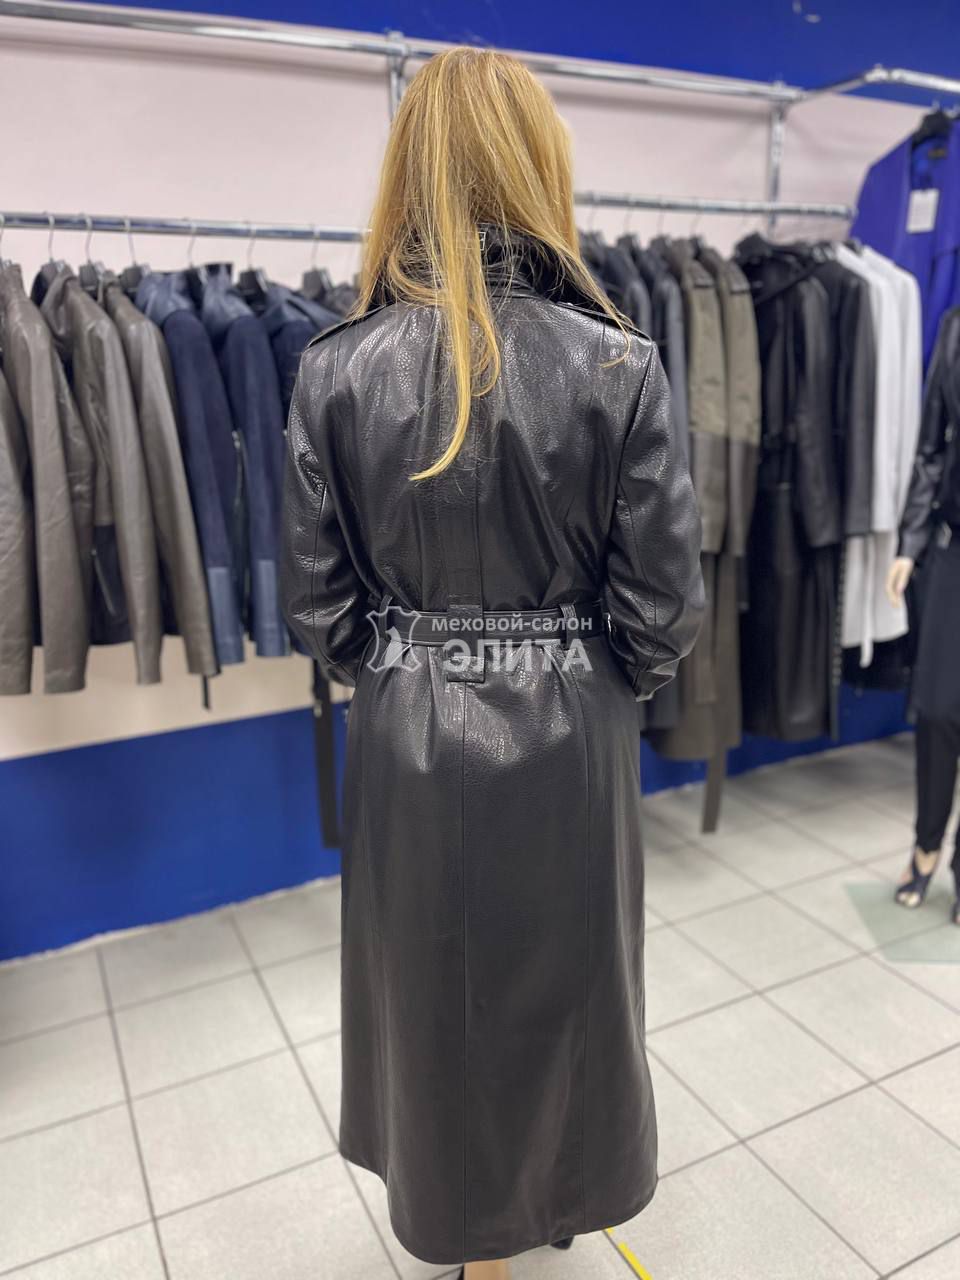 Кожаное пальто м-2758, р-р 46-54, цена 53000 рублей в интернет-магазине кожи и меха ЭЛИТА. Вид 2